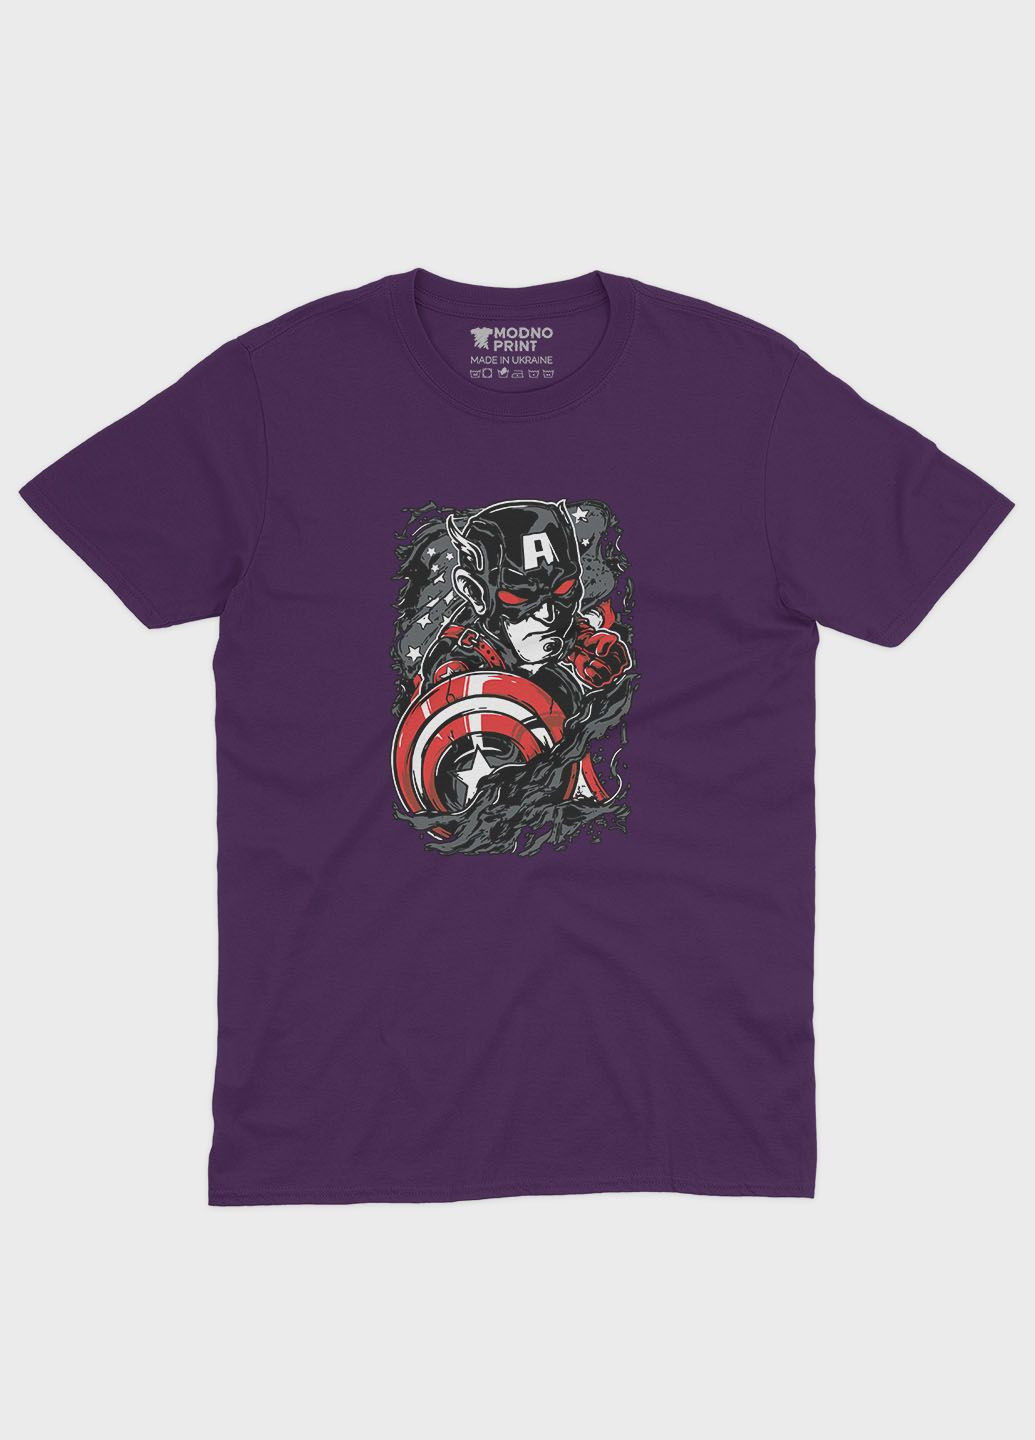 Фиолетовая демисезонная футболка для девочки с принтом супергероя - капитан америка (ts001-1-dby-006-022-013-g) Modno